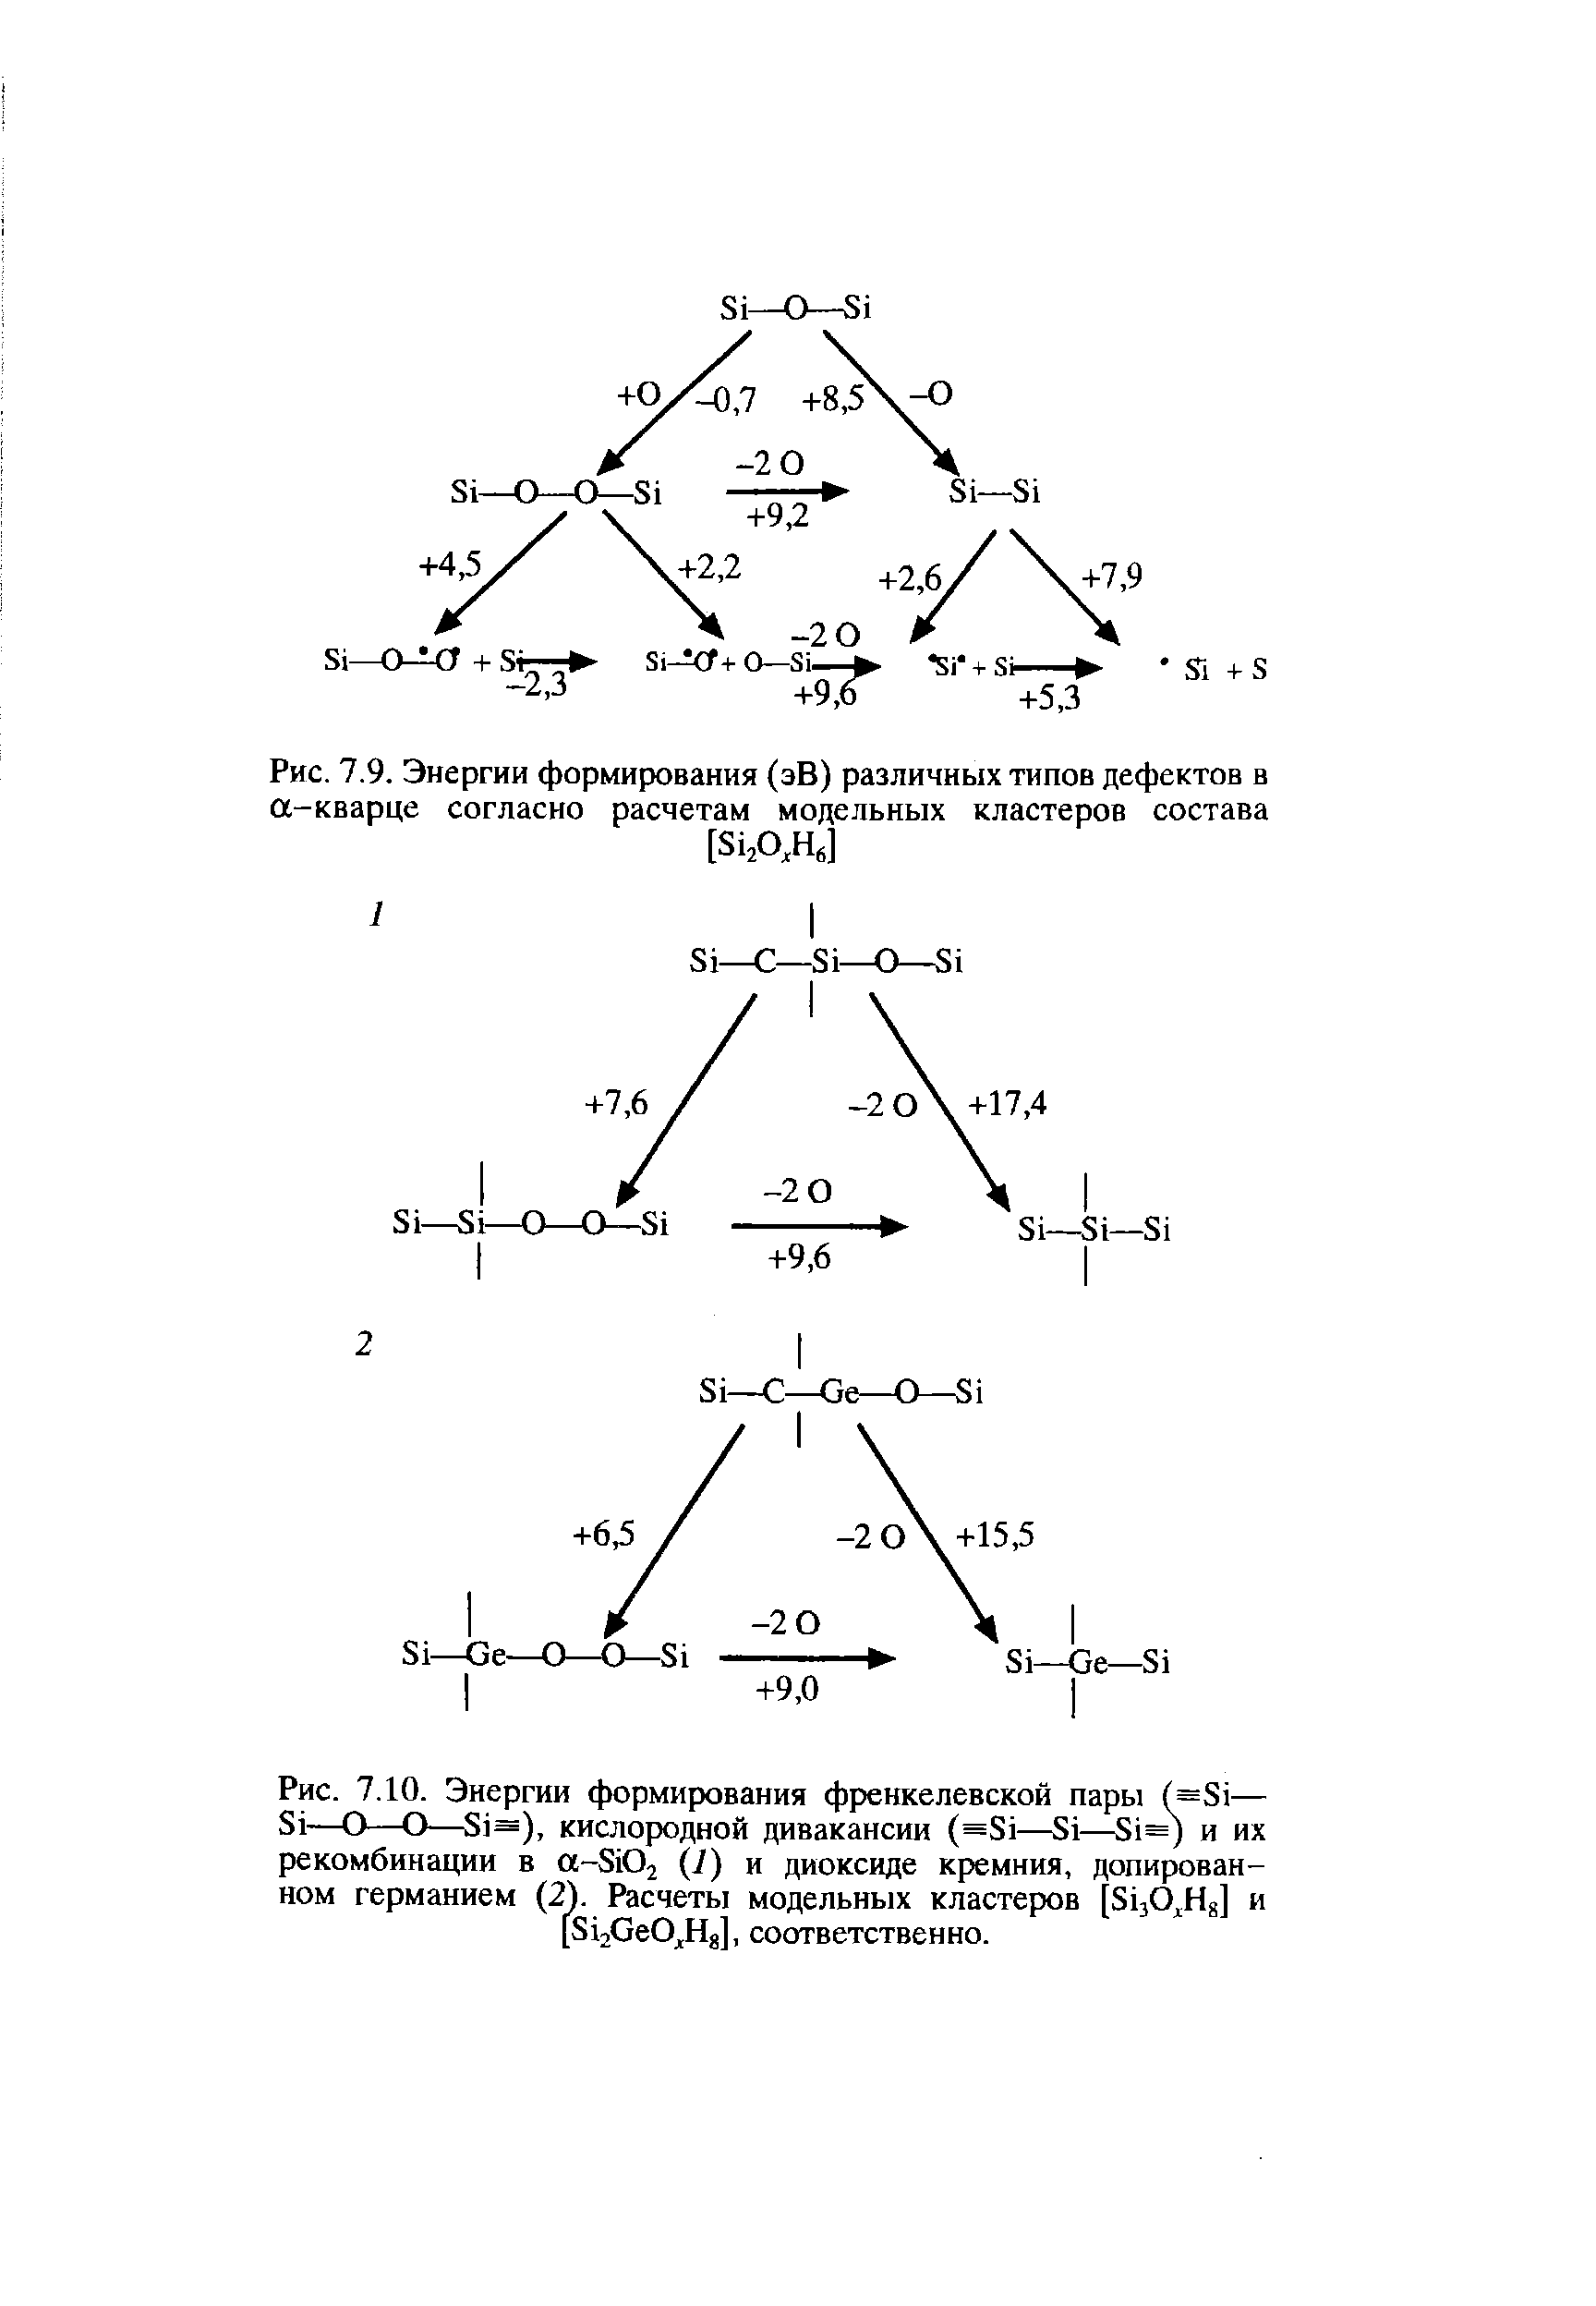 Рис. 7.10. Энергии формирования френкелевской пары (=81— 81—О—О—81=), кислородной дивакансии (=81—81— 1=) и их рекомбинации в а-8102 (1) и <a href="/info/43421">диоксиде кремния</a>, допирован-ном германием (2). Расчеты модельных кластеров [ЗцО На] и [8120е0А]1 соответственно.
